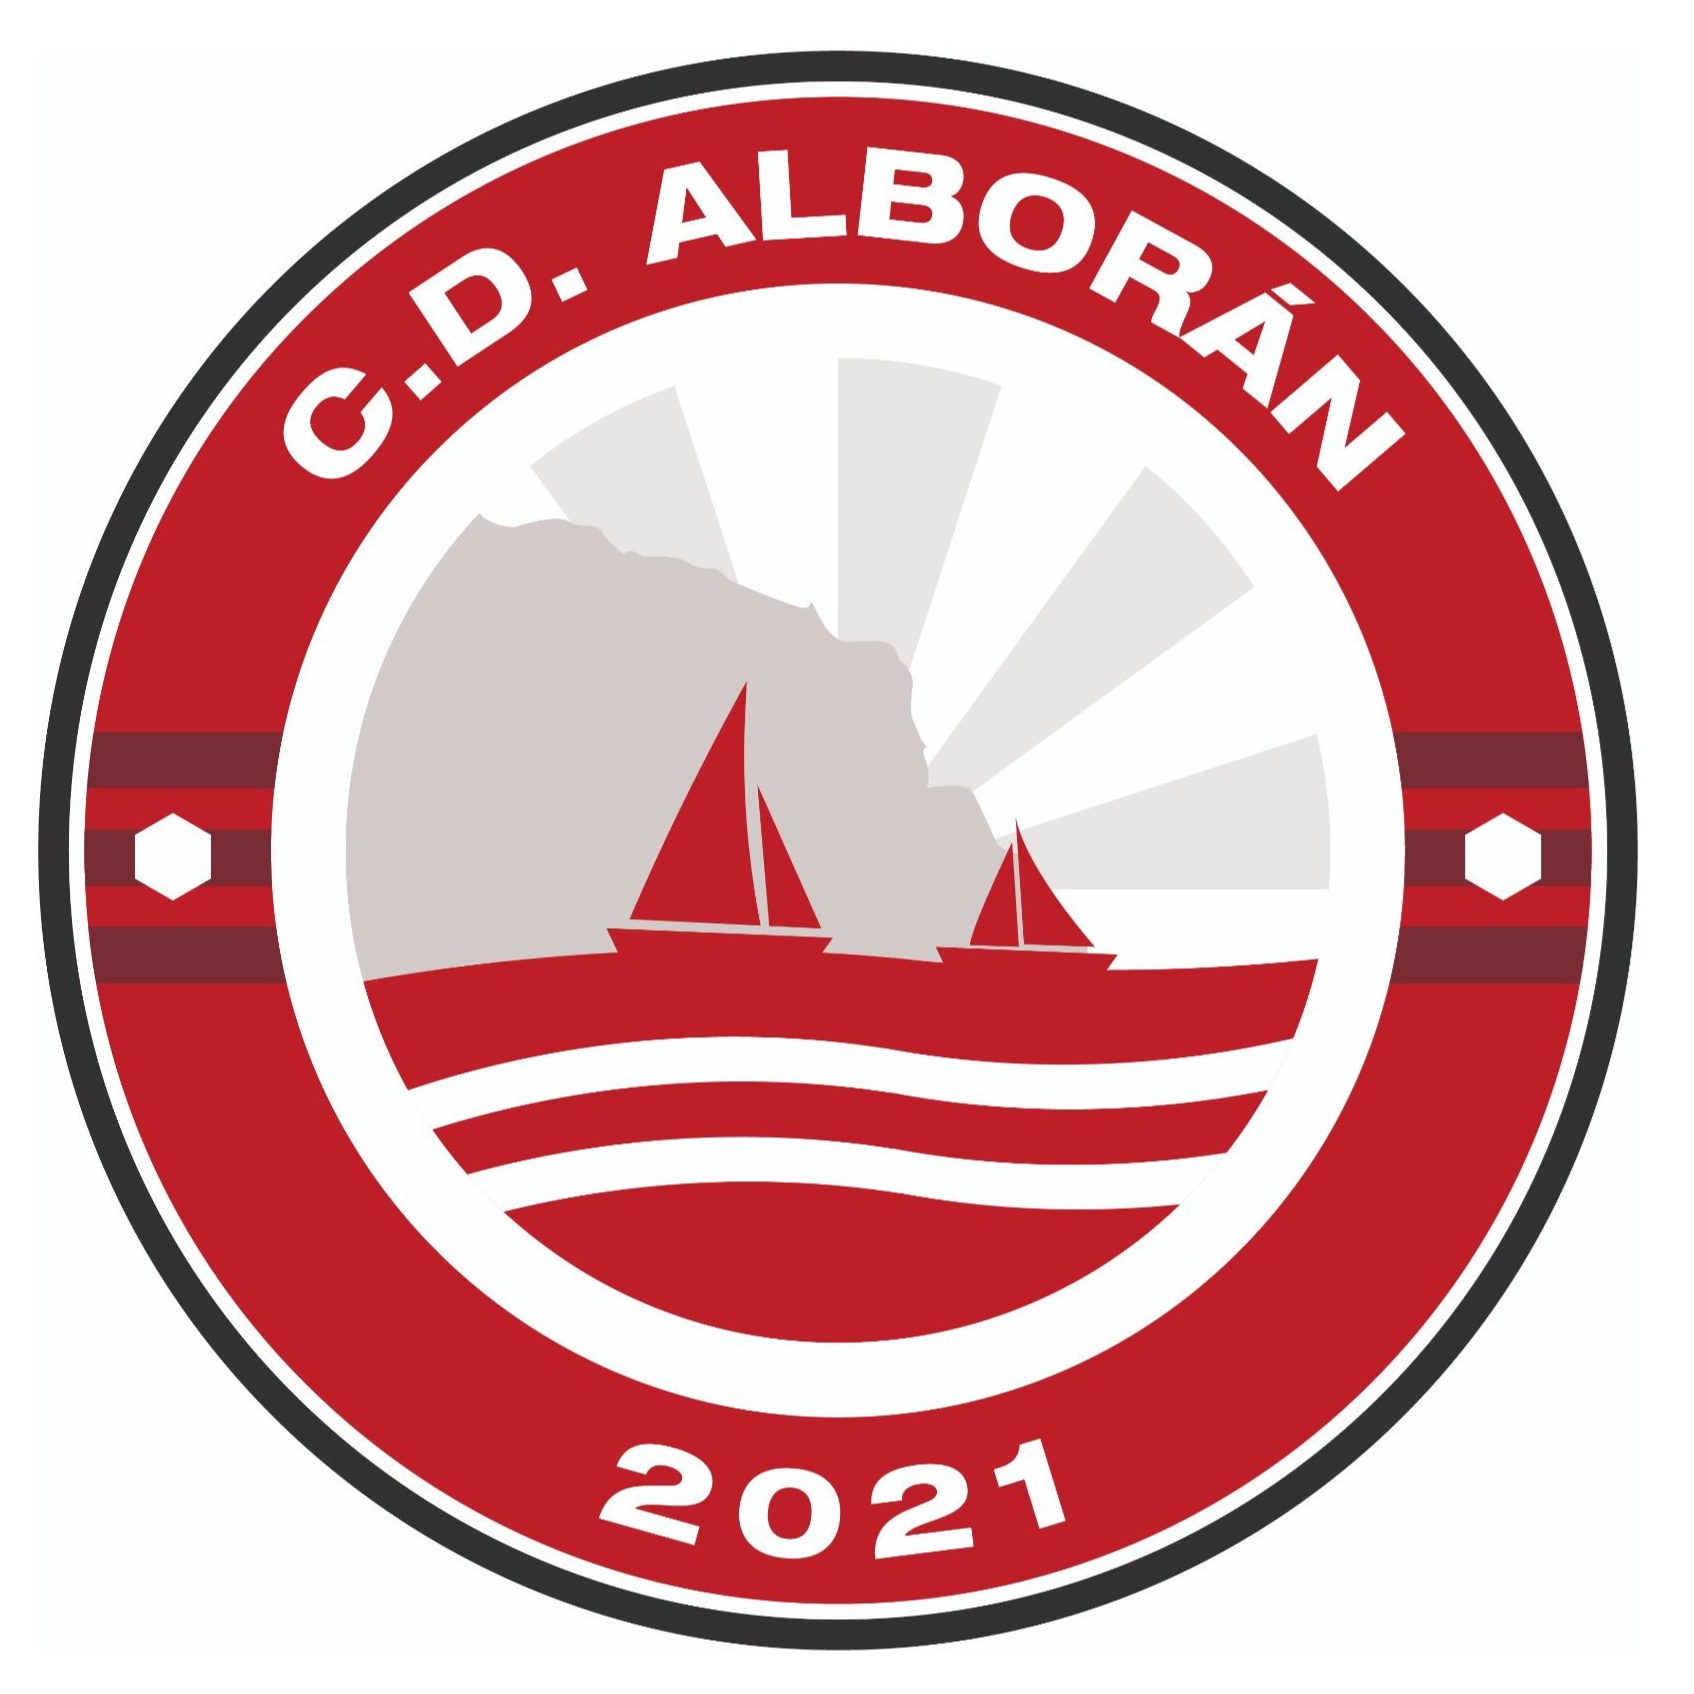 Escudo del Alboran 2021